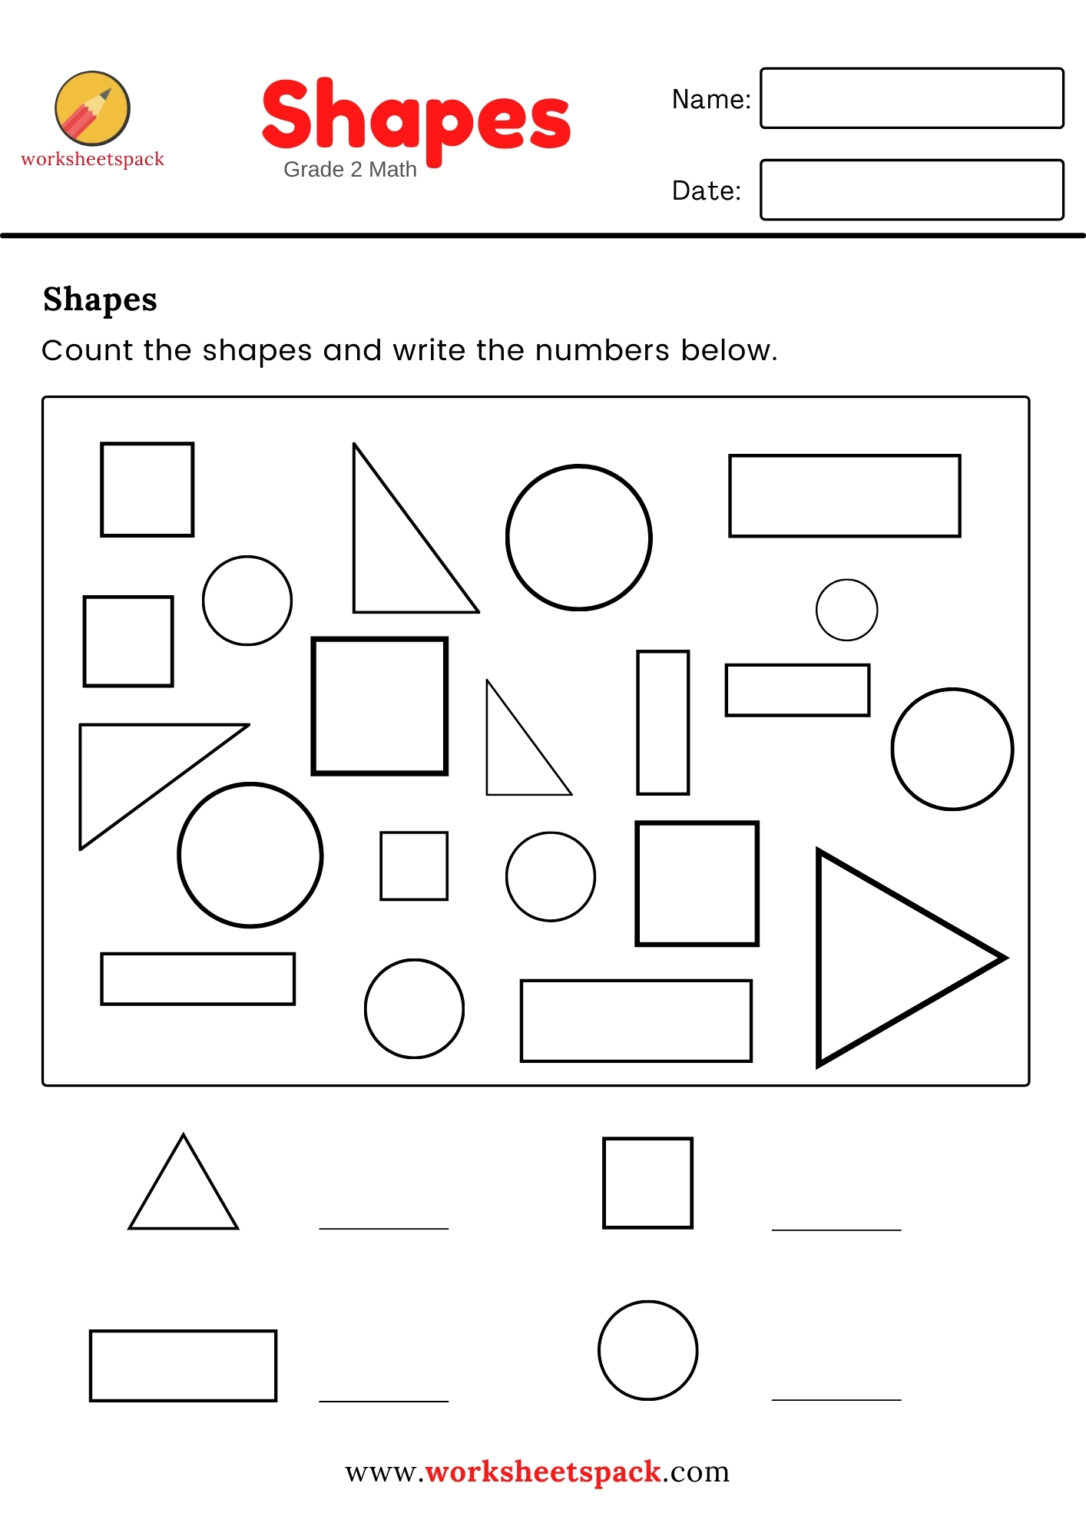 shapes-worksheets-for-grade-2-worksheetspack